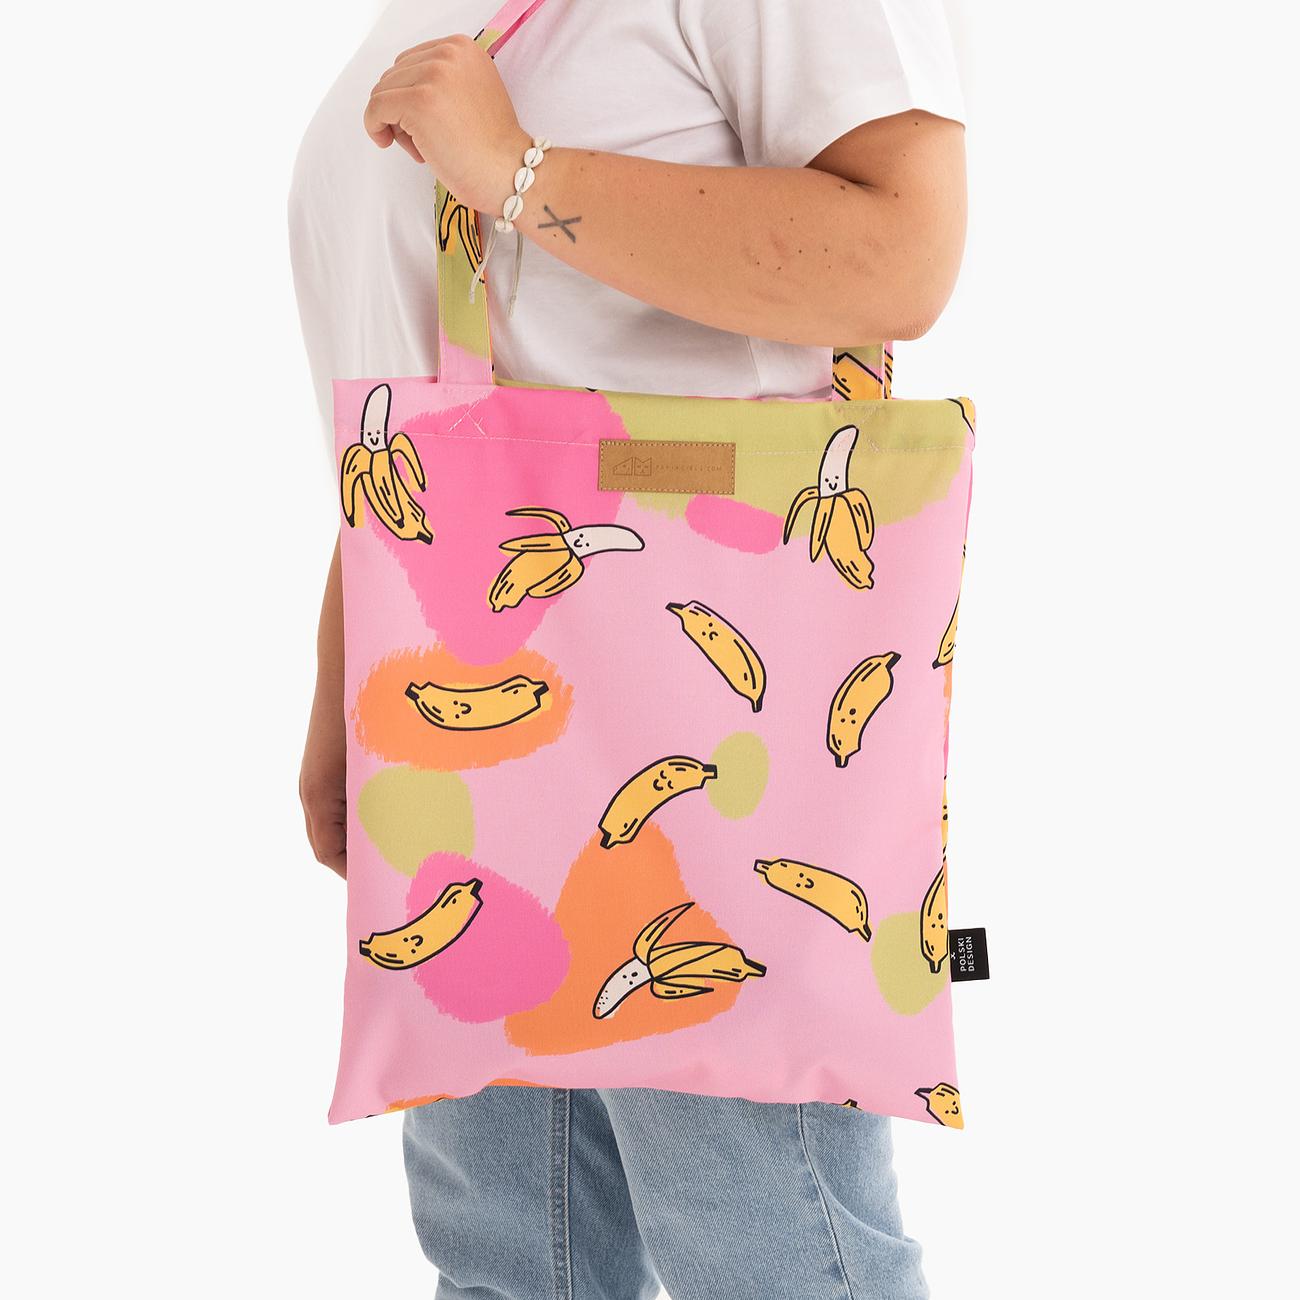 Reusable bag "We went bananas"